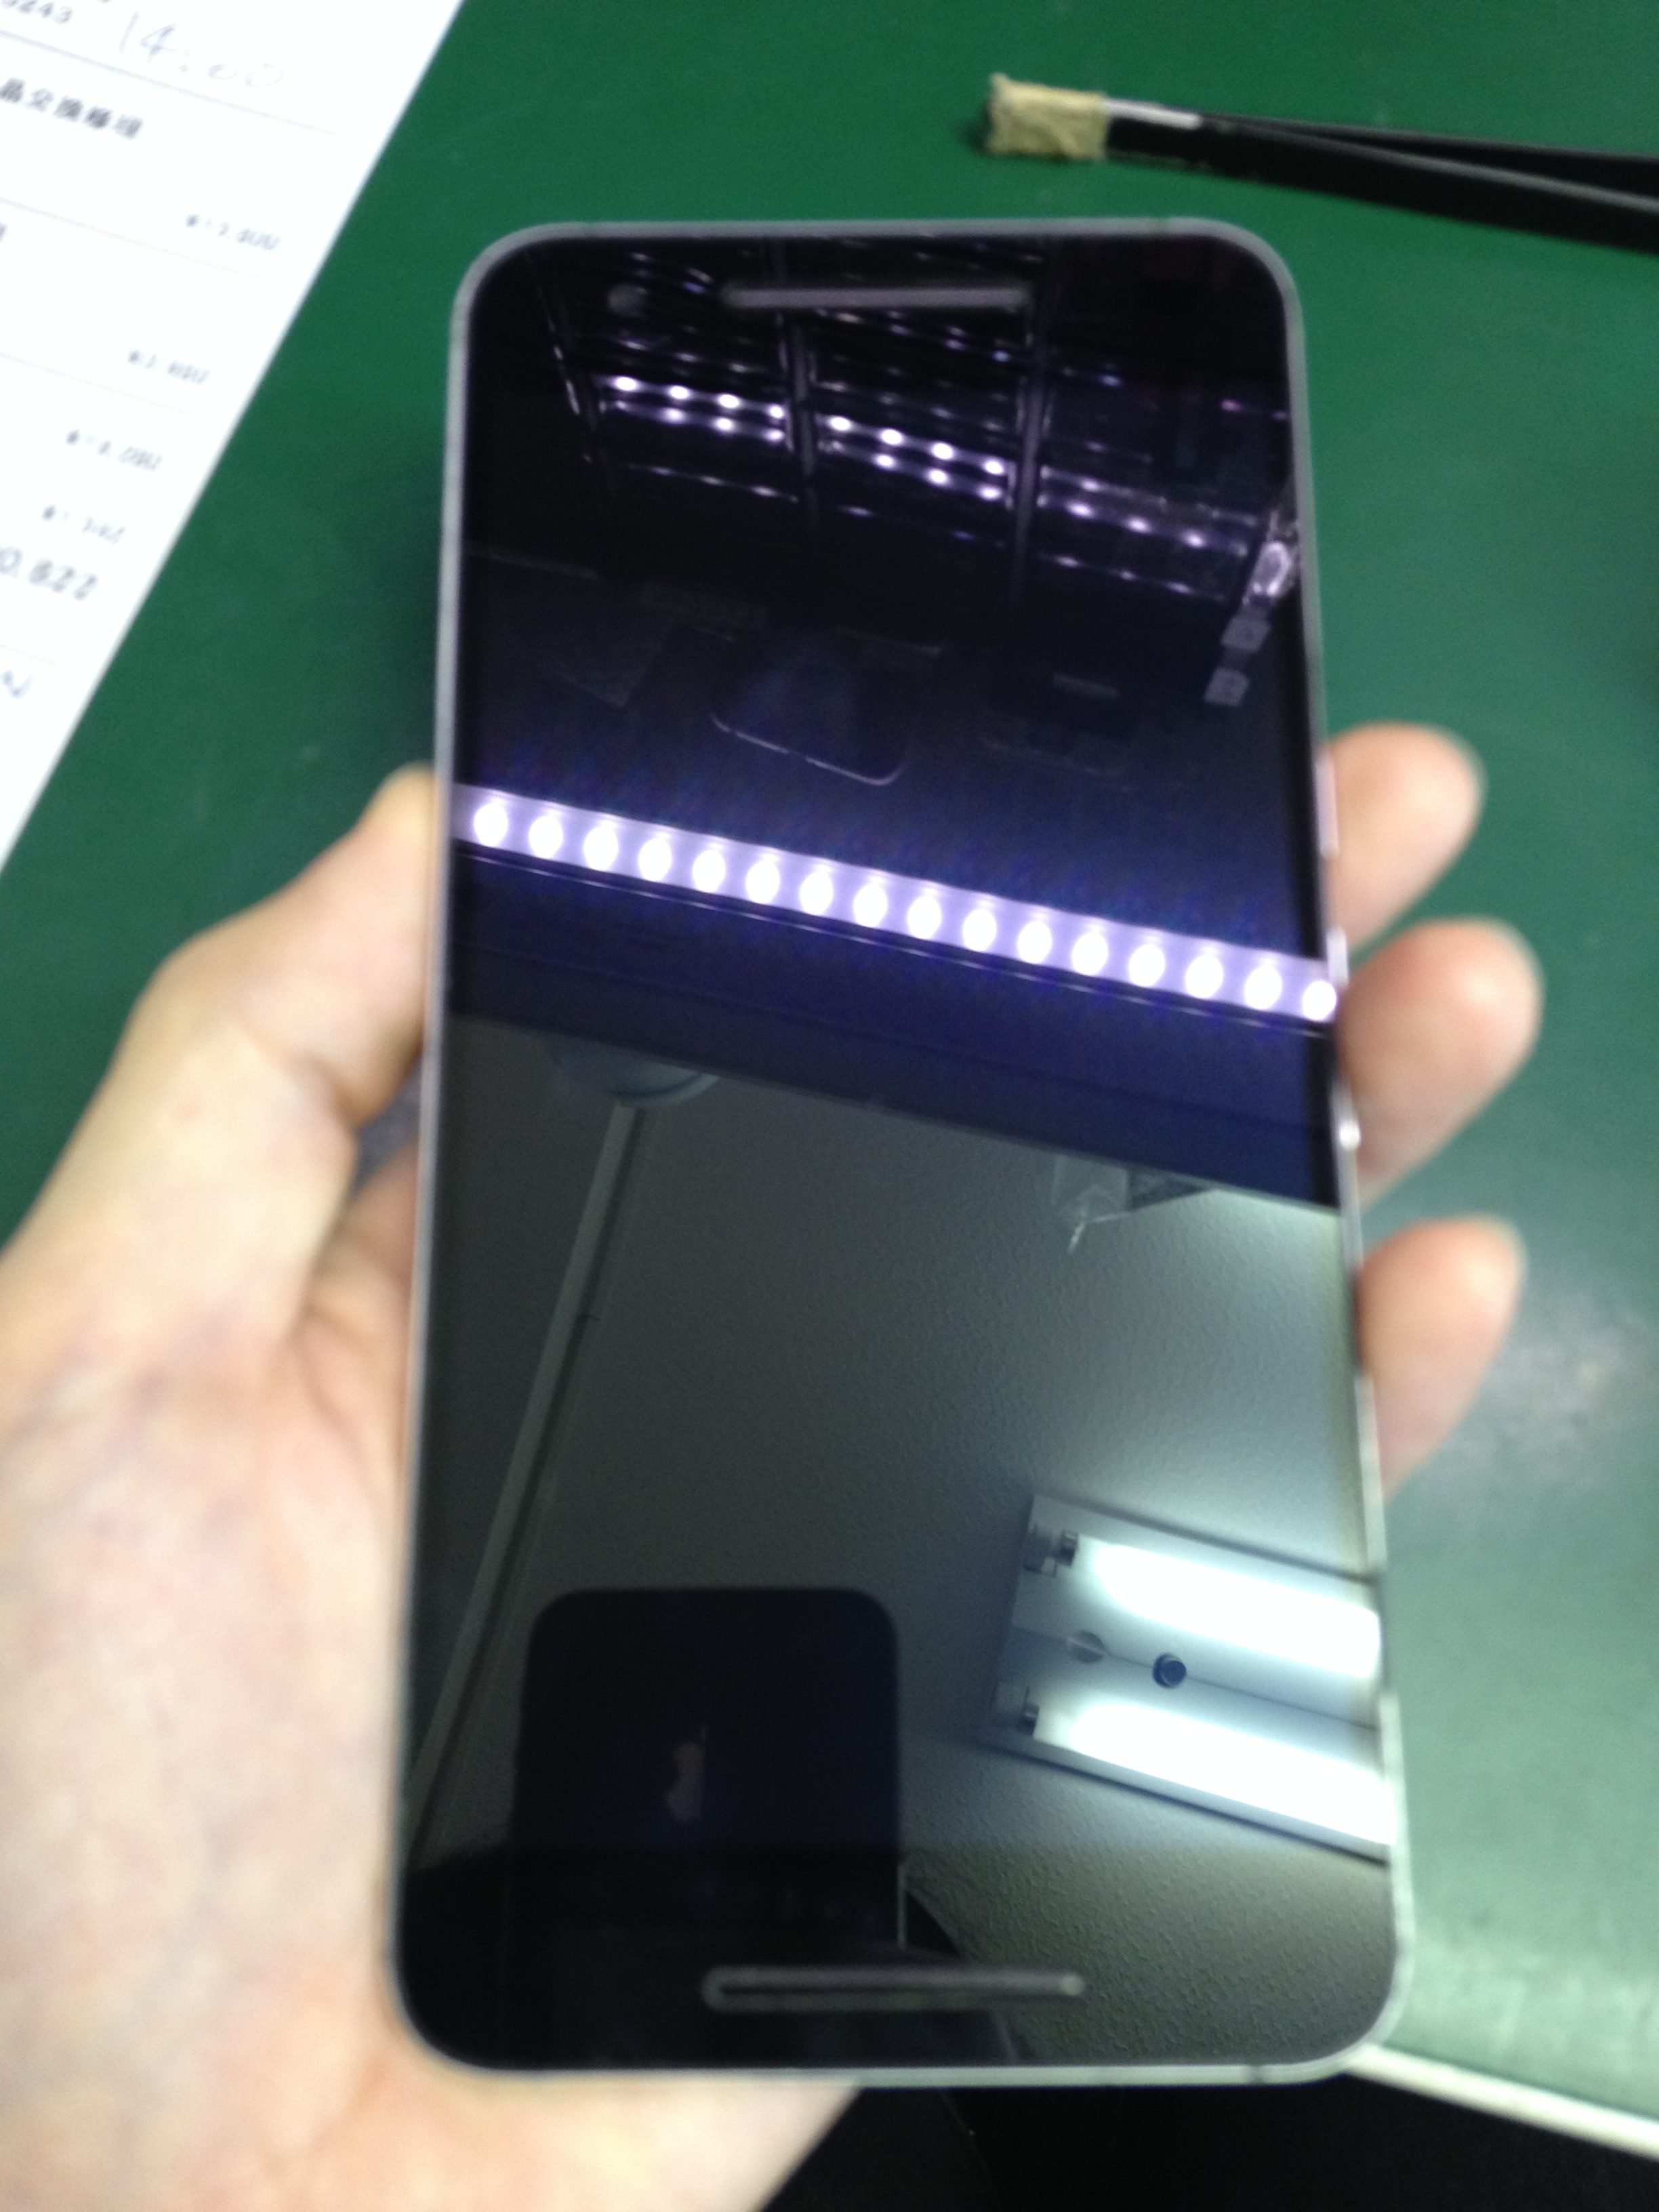 画面が映らないけど着信とかで反応はある Nexus6pガラス 液晶交換修理 Xperia Galaxy Zenfone Huawei Nexus修理のアンドロイドホスピタル